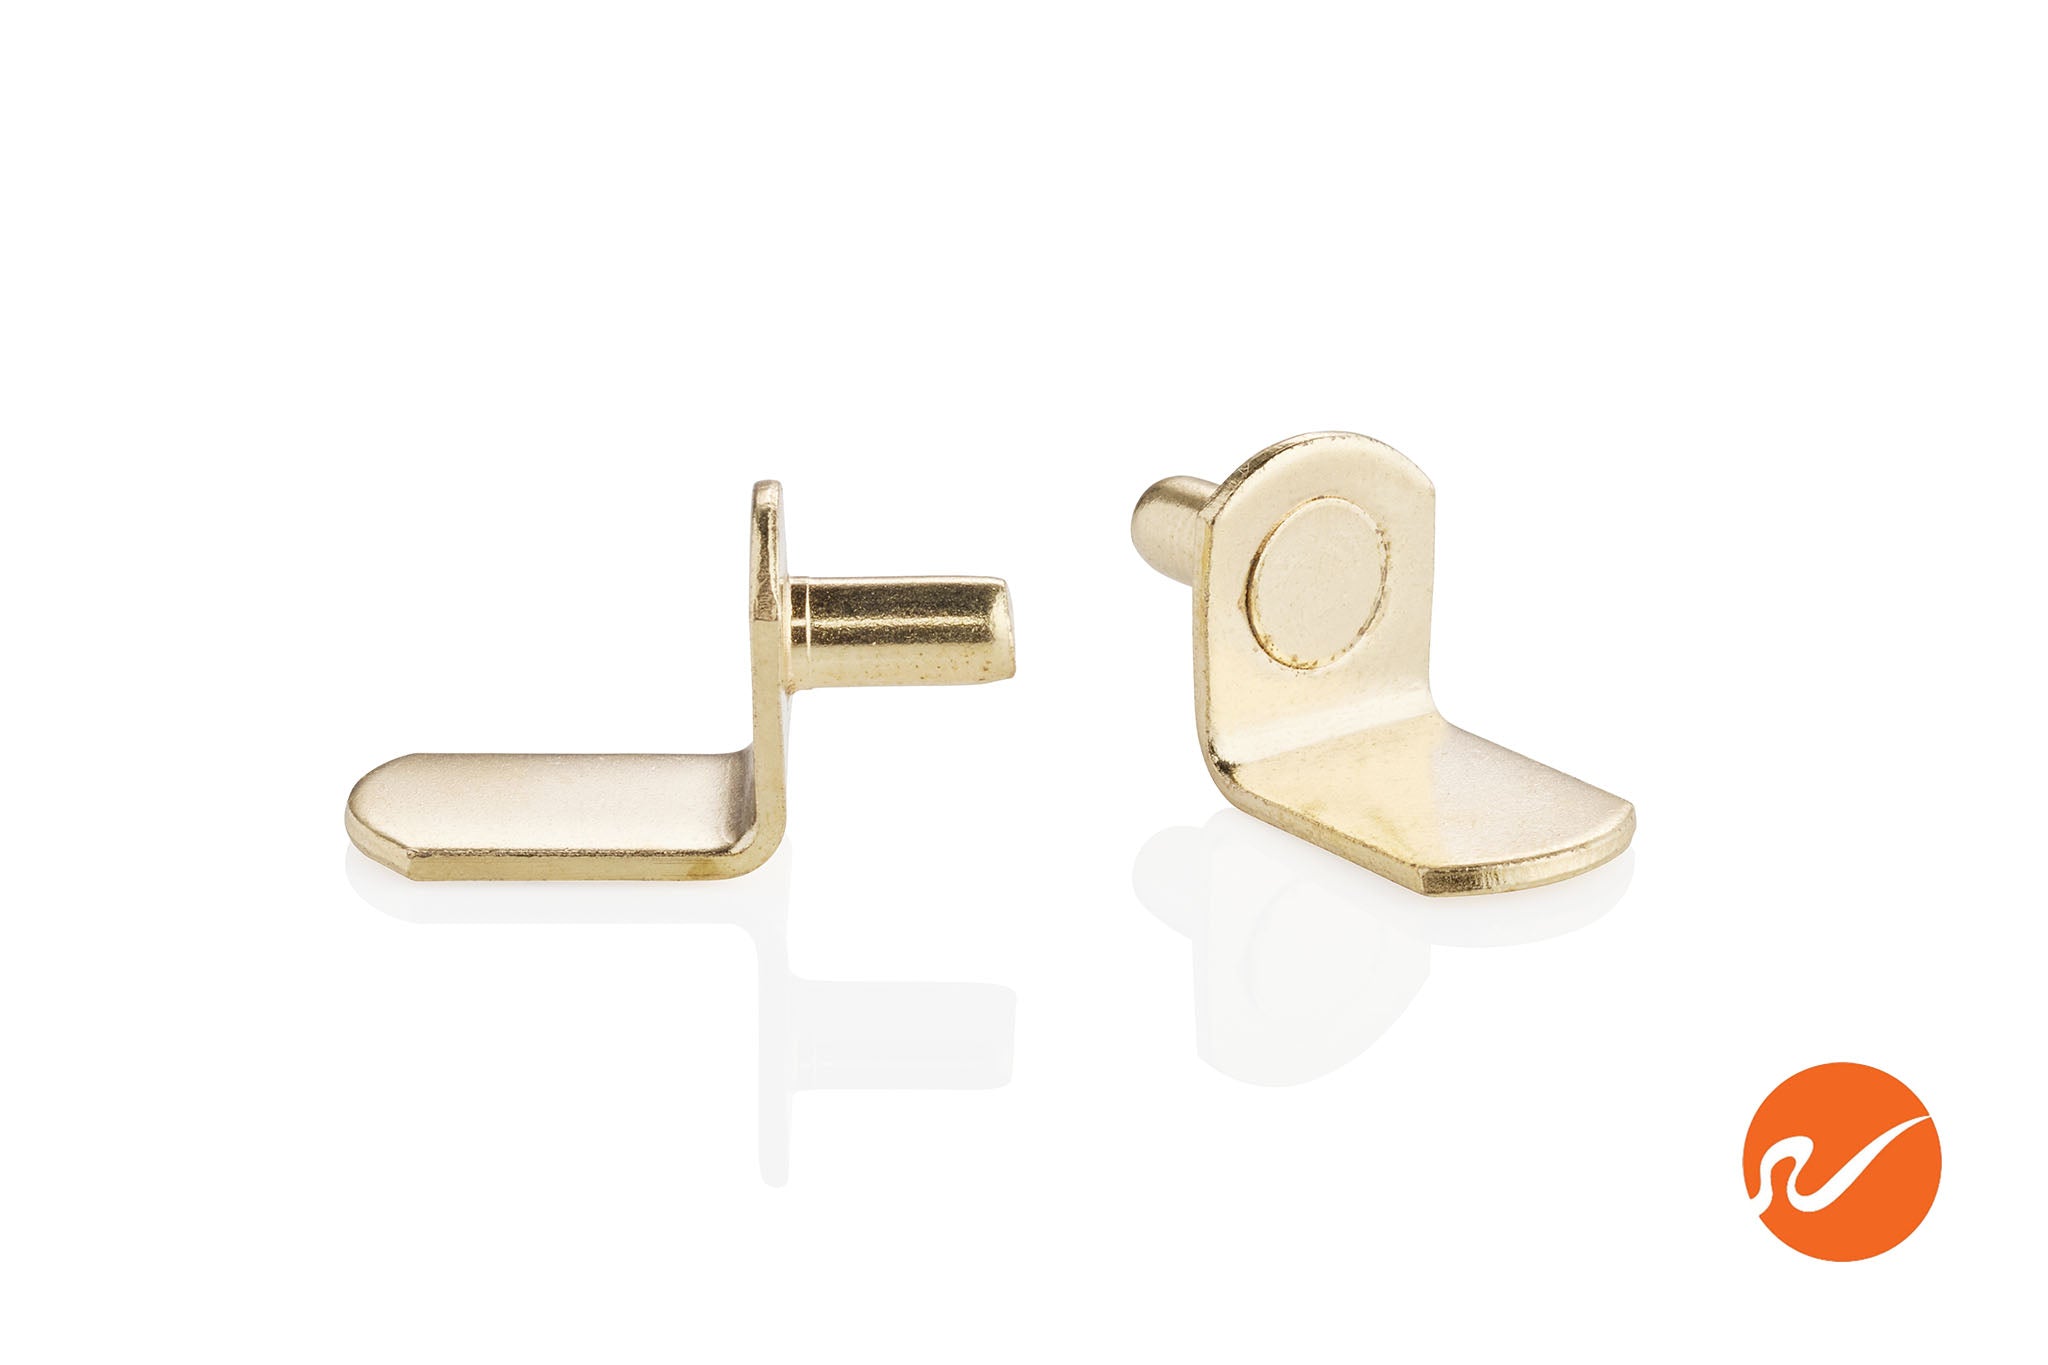 5mm Brass "L" Shelf Pins - WidgetCo